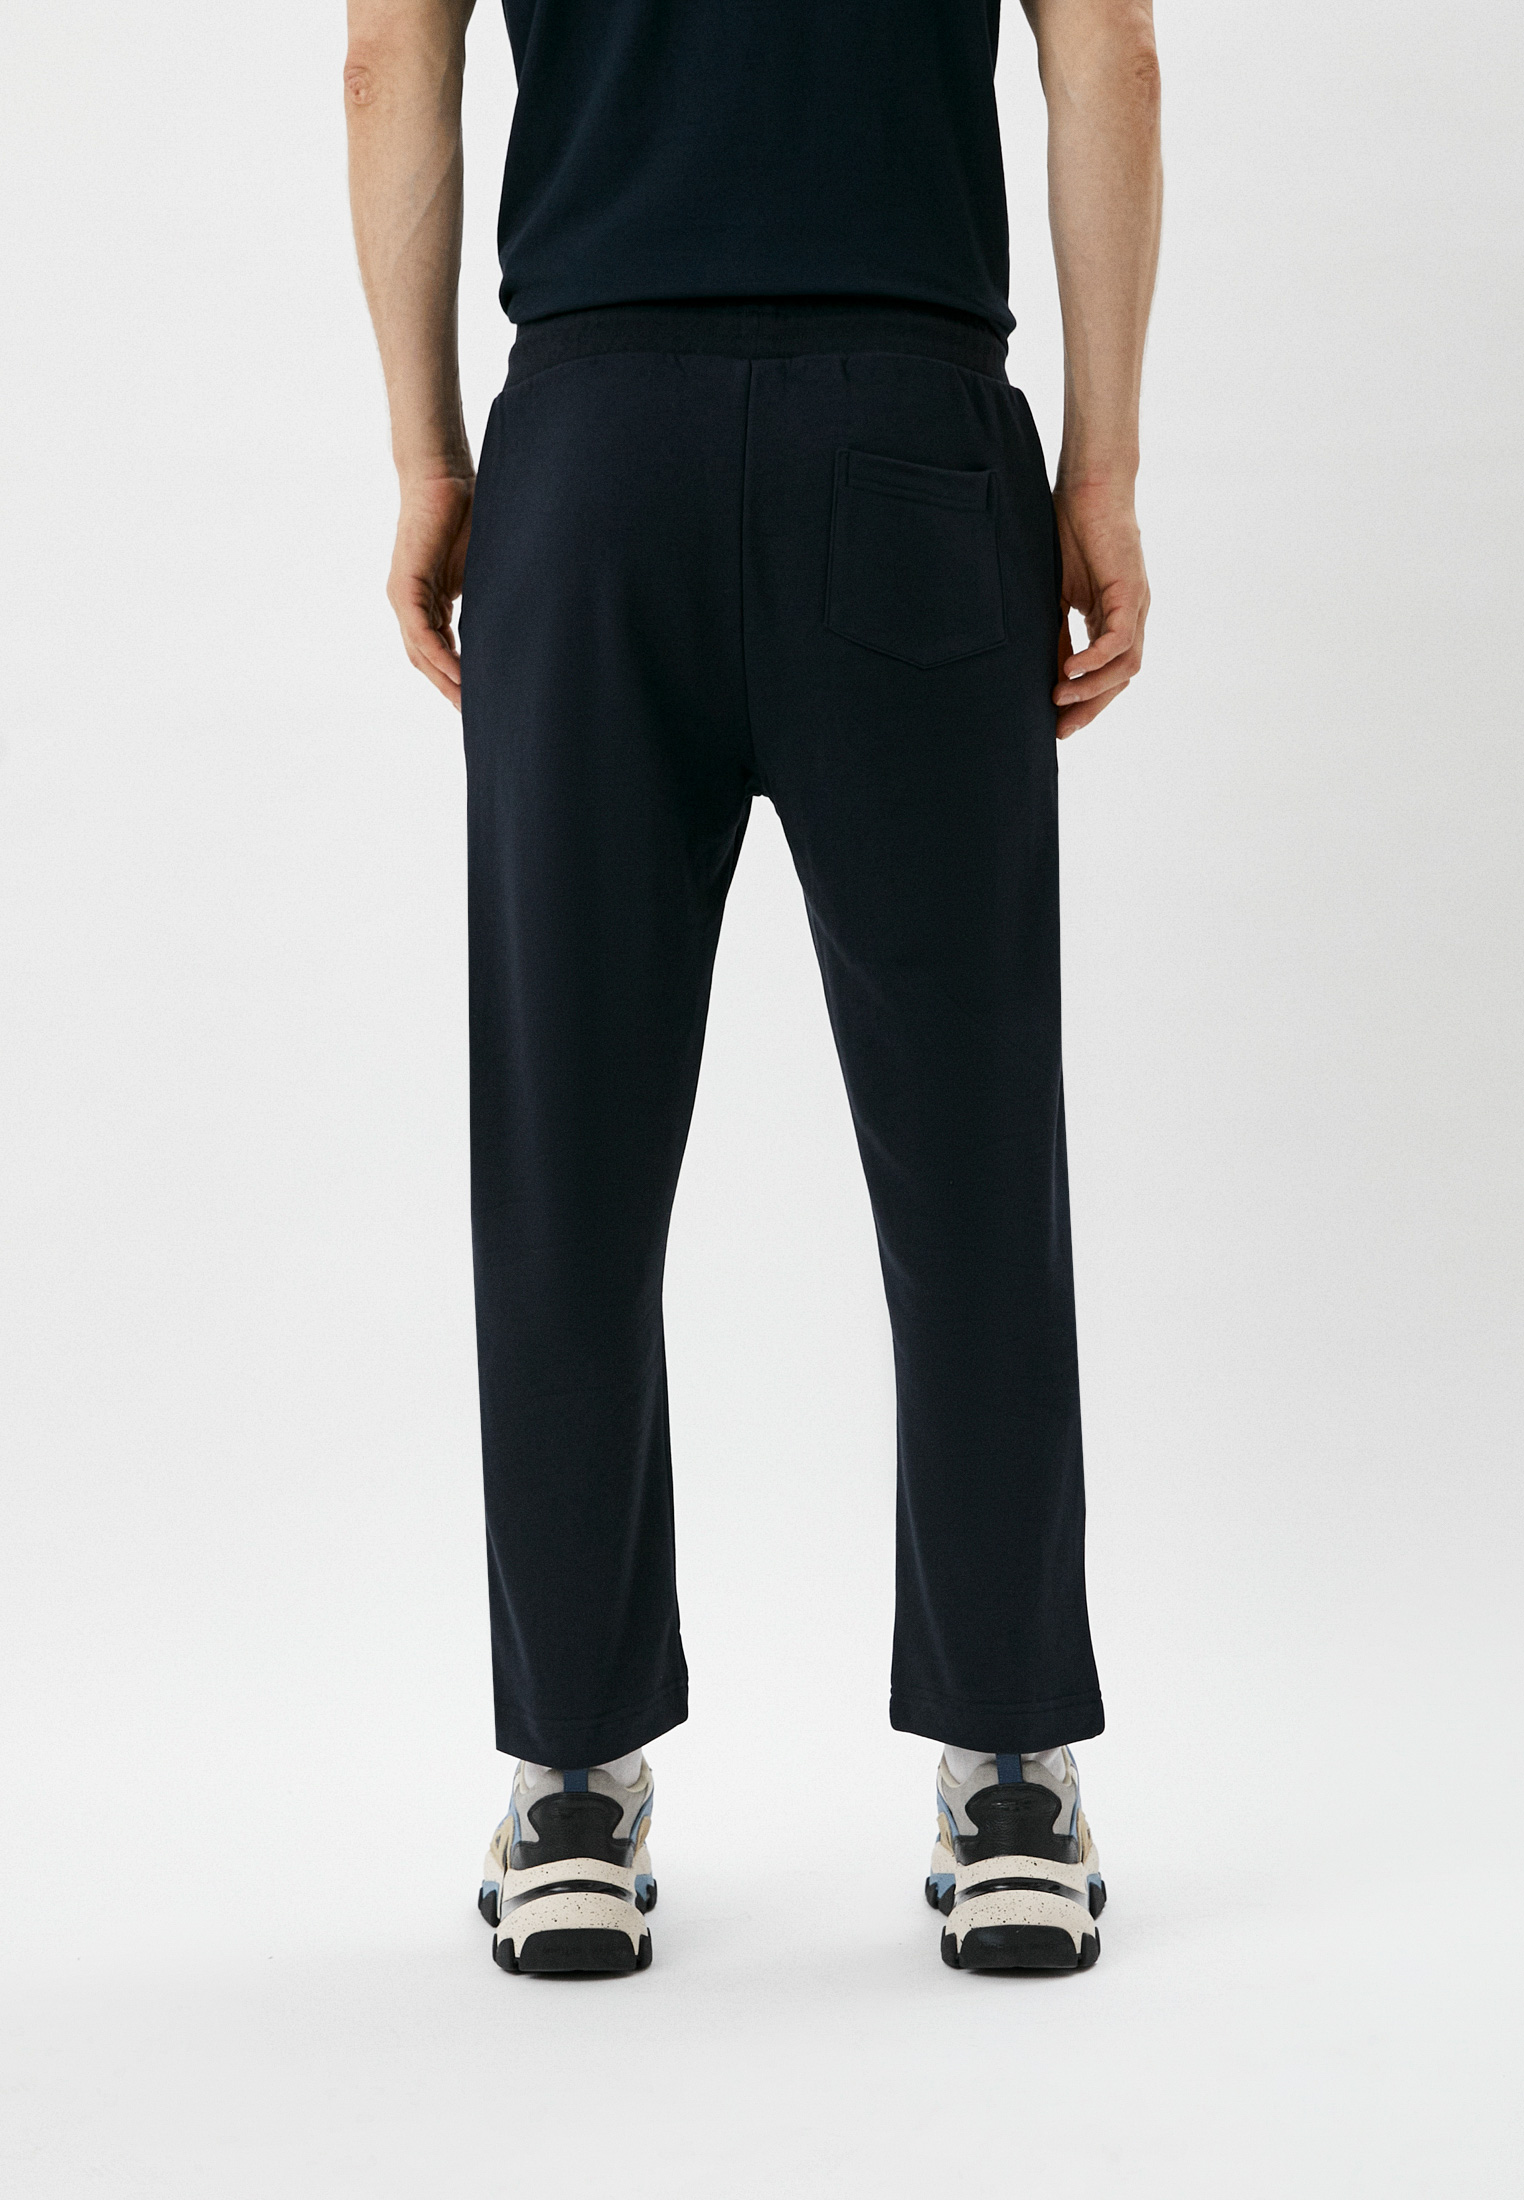 Мужские спортивные брюки Baldinini (Балдинини) M106L: изображение 3